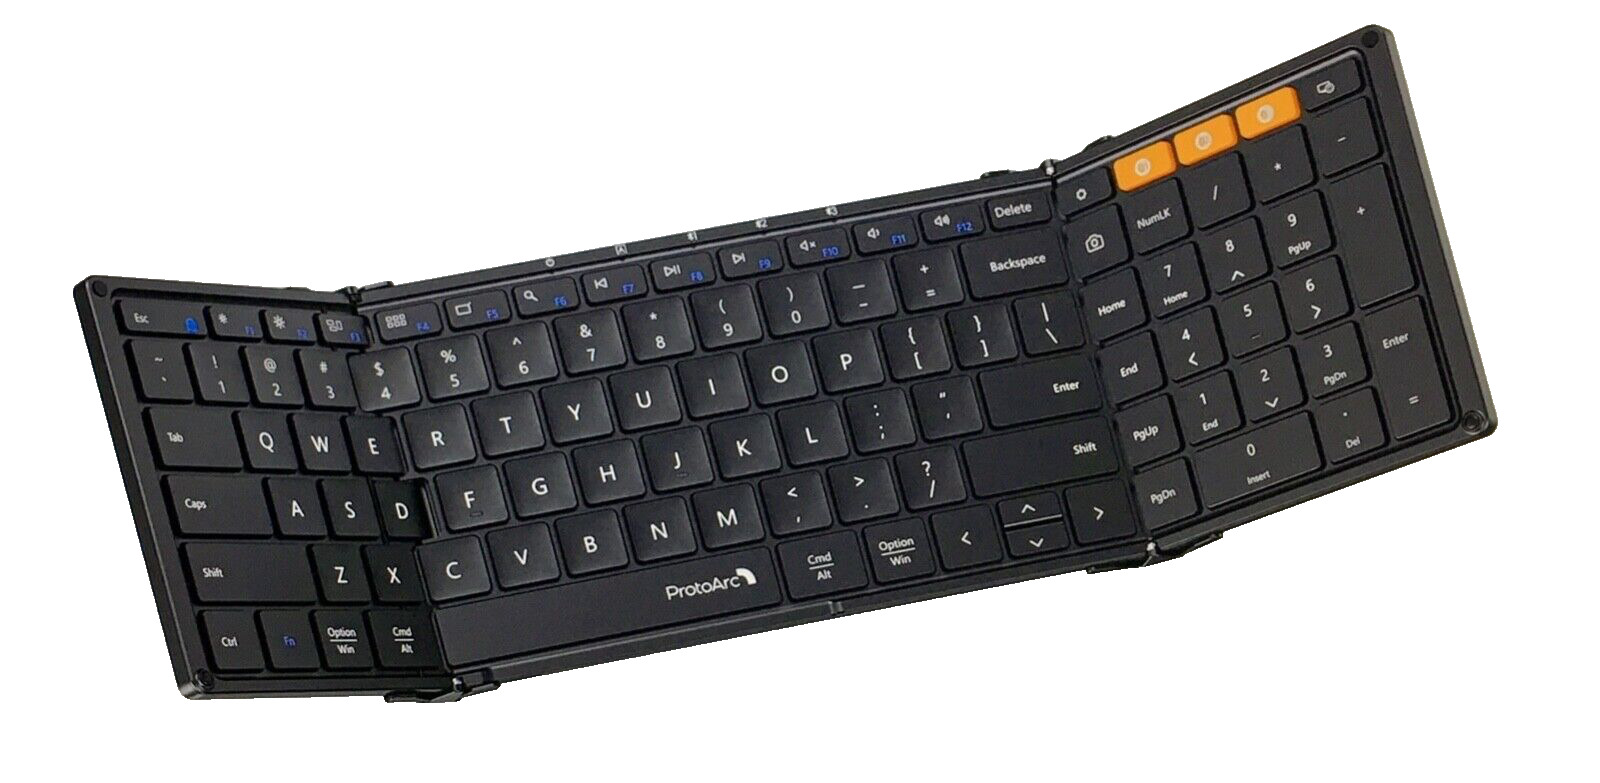 PROTOARC XK01 Portable Folding 105-Key Keyboard Fullsize With number keypad